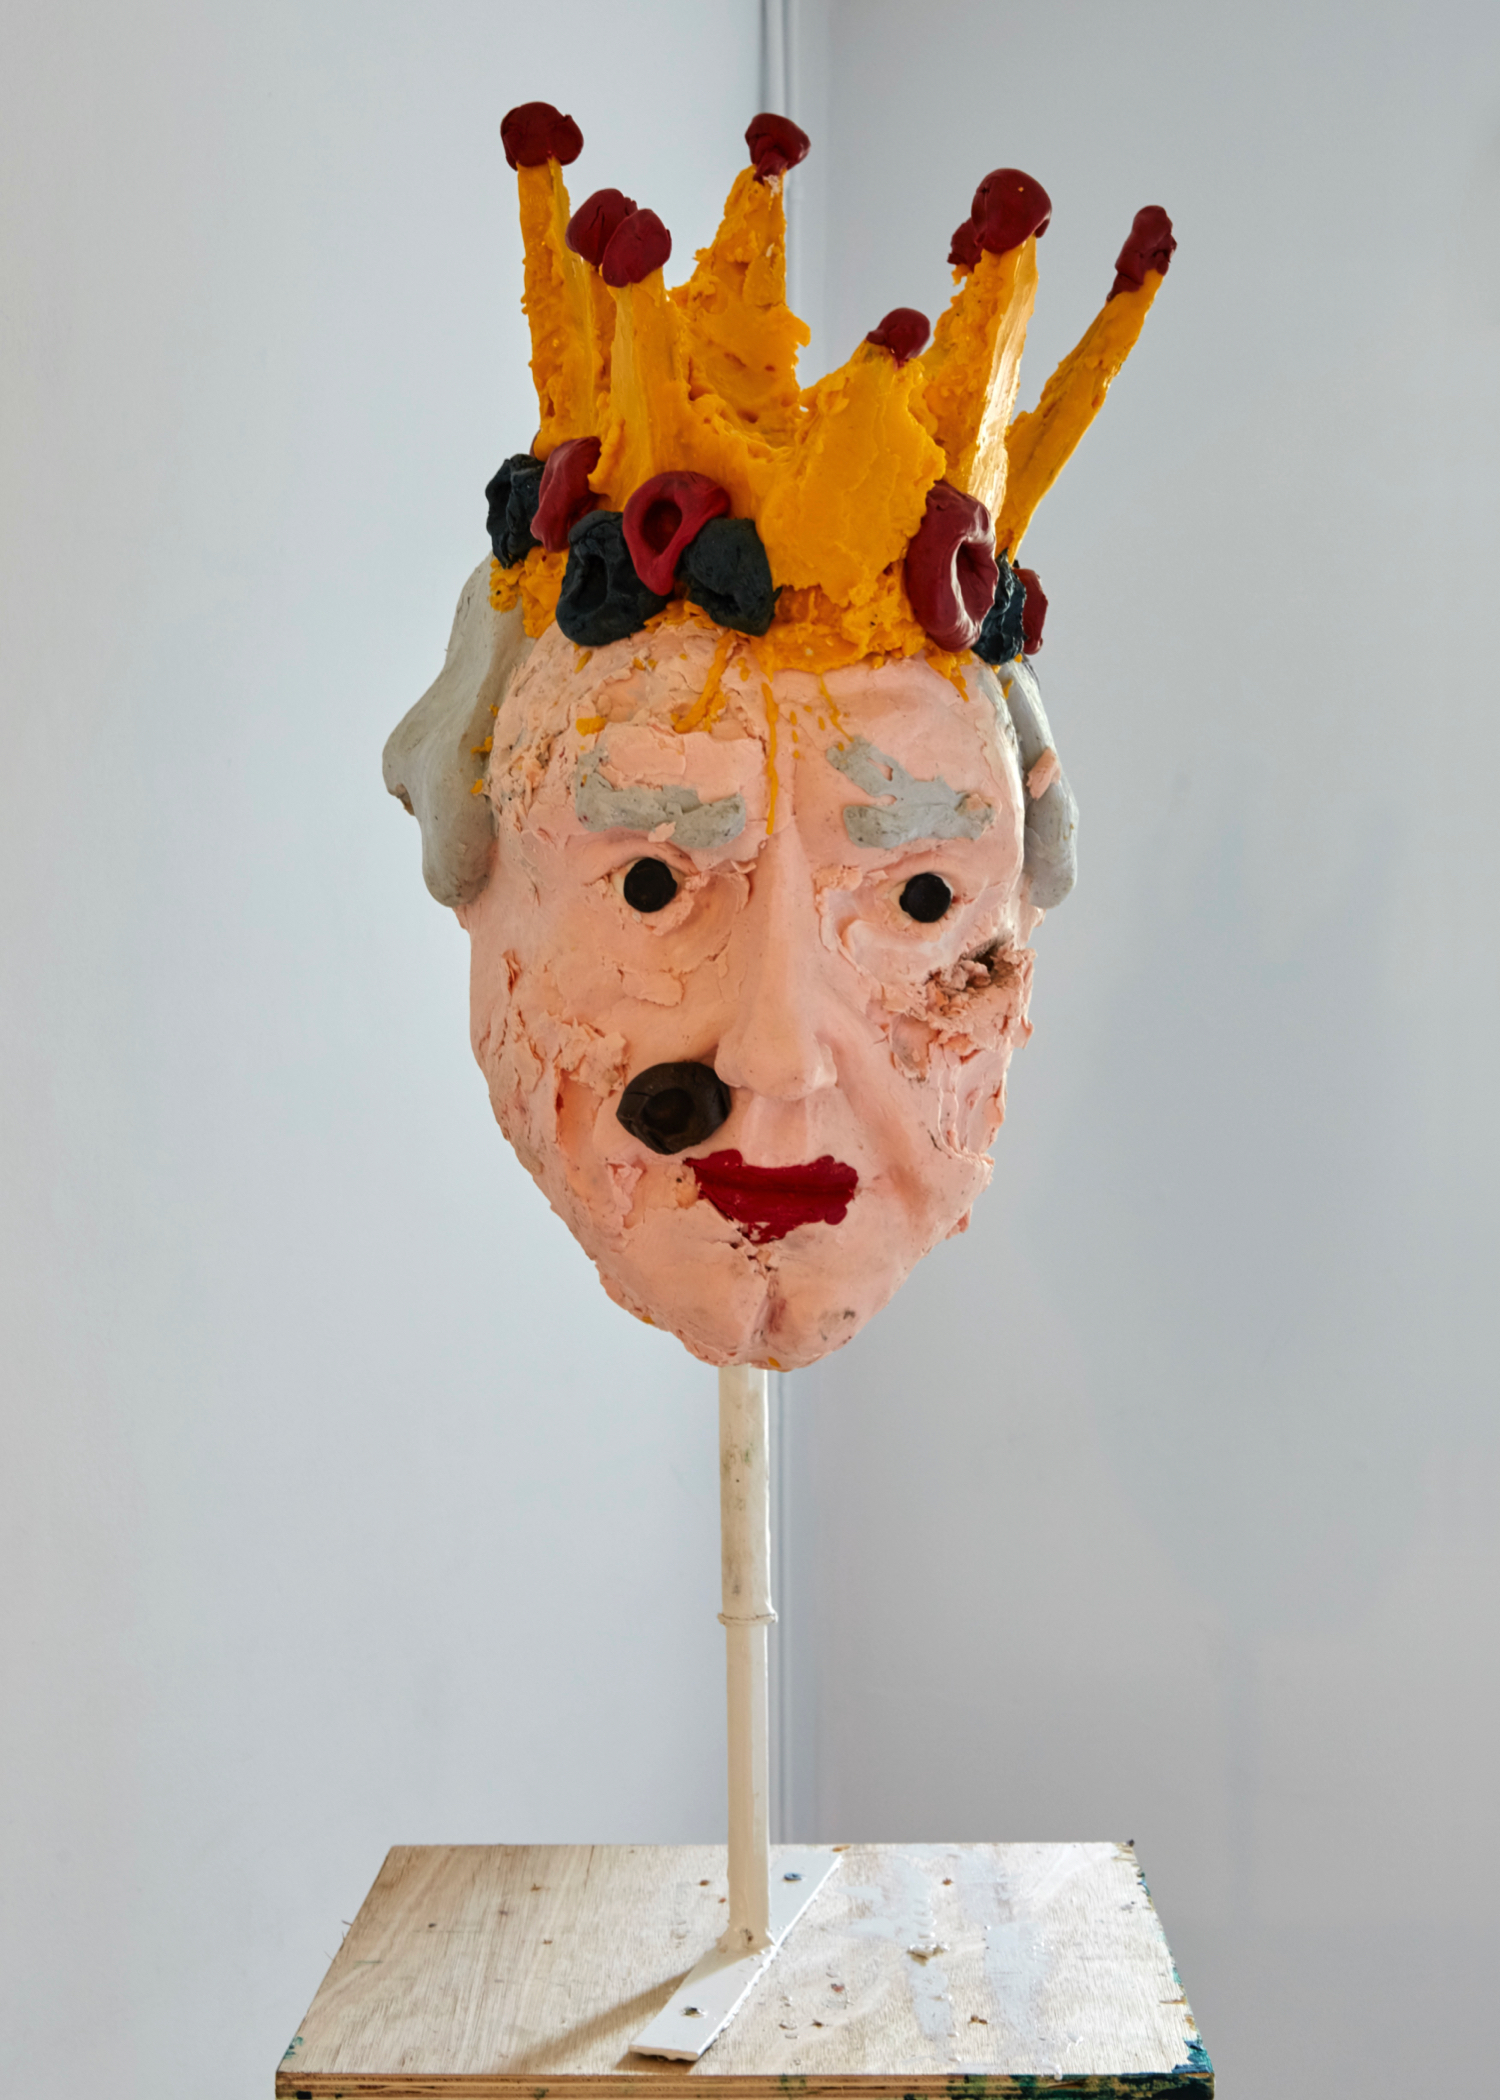 Jamie Fitzpatrick, ‘Head’, 2019, wax, scrim and polyurethane foam, 56 x 36 x 31 cm